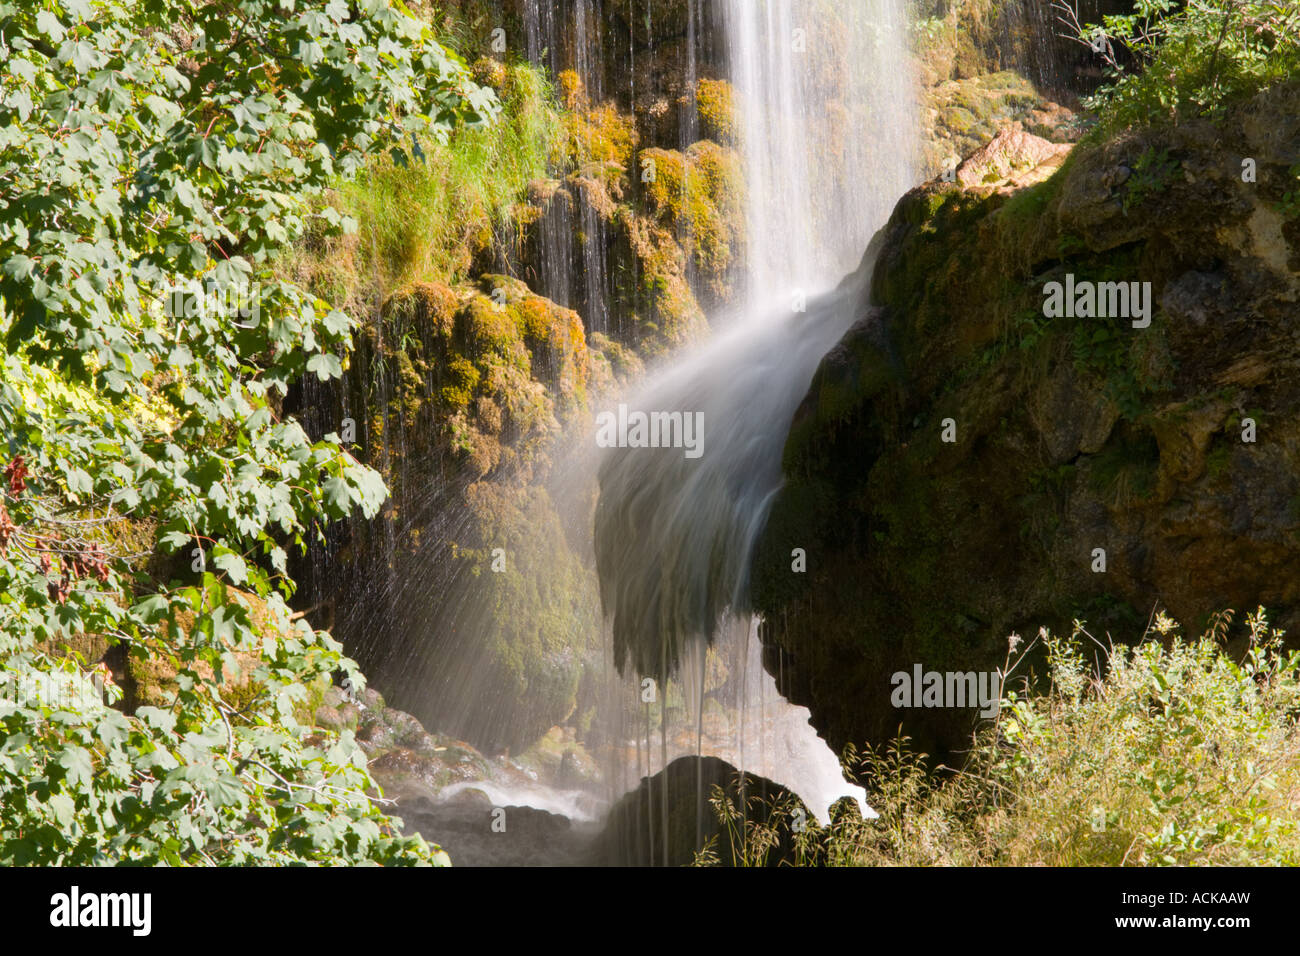 Waterfall water falling, Rastoke near Slunj, Croatia Stock Photo